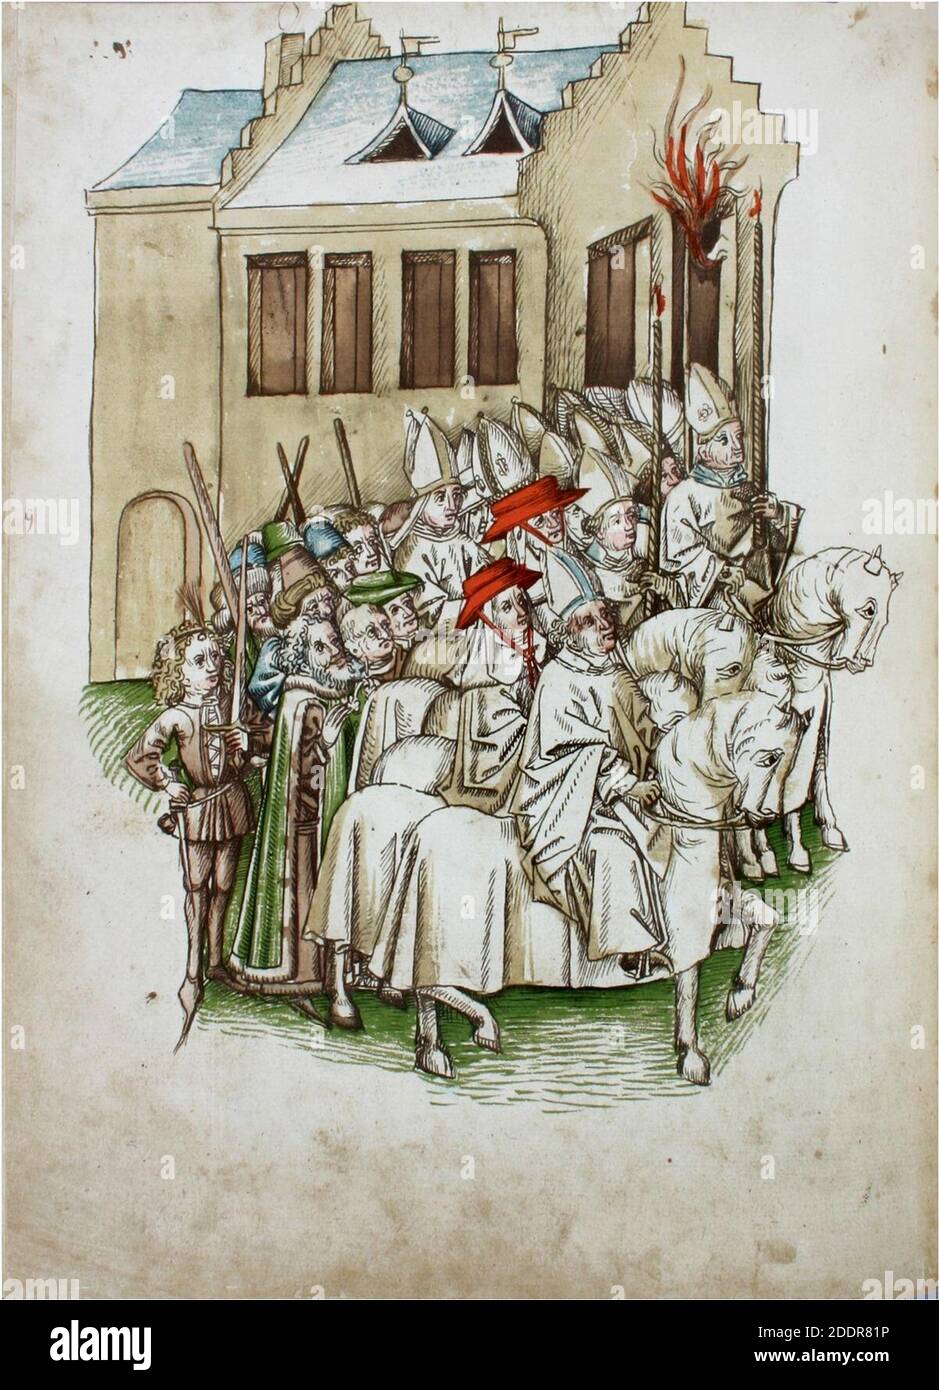 Konstanzer Richental Chronik Papstkrönung, Gruppe von berittenen Bischöfen betrachtet die Papstkrönung 102v. Stock Photo